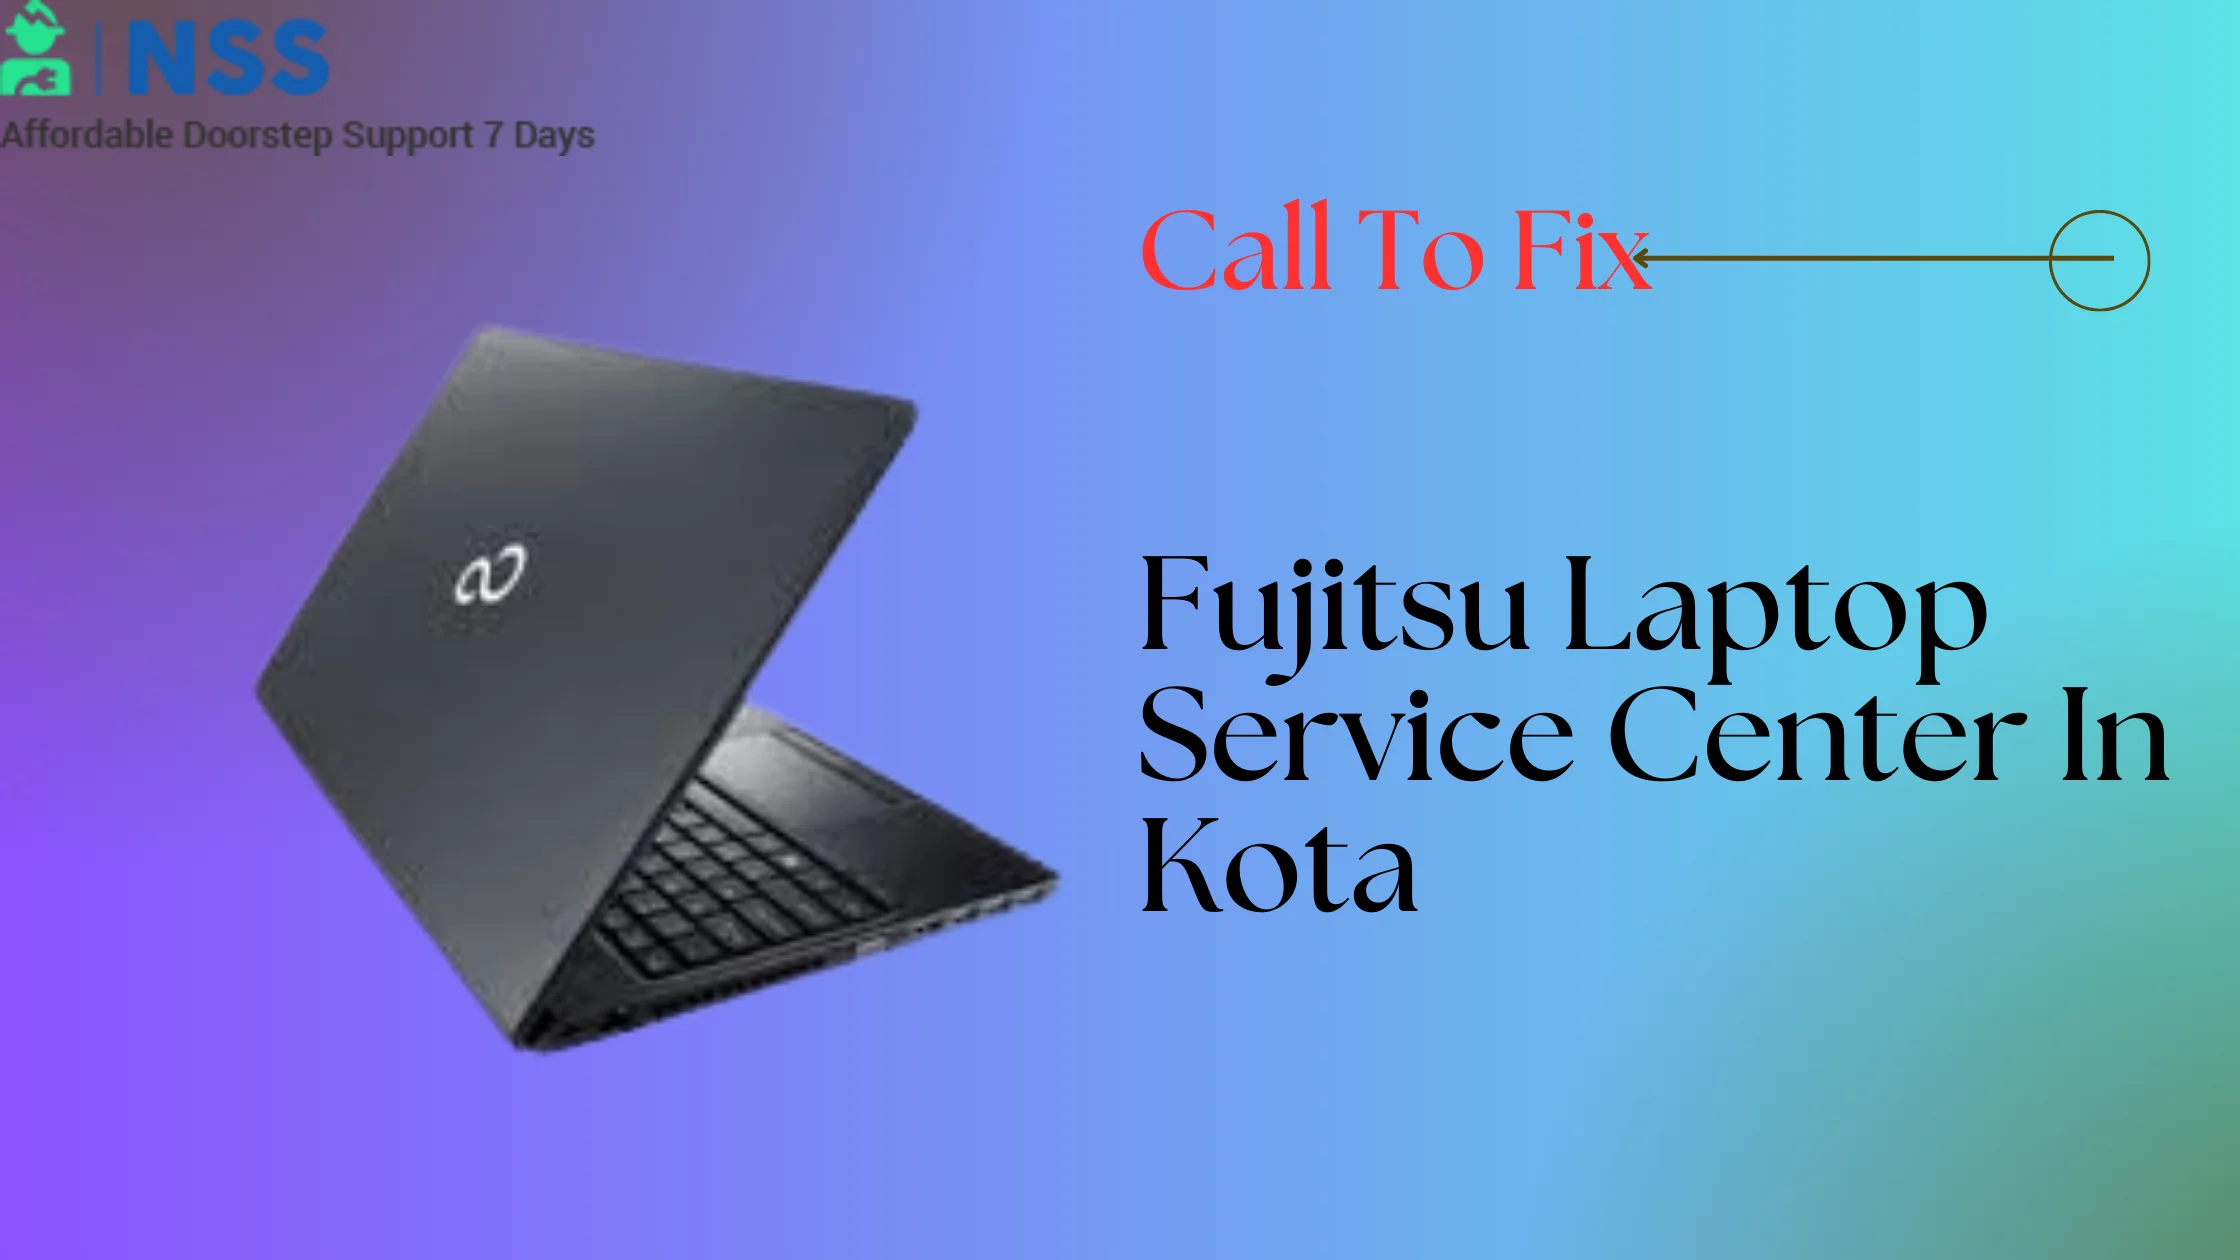 Fujitsu Laptop Service Center In Kota Rajasthan